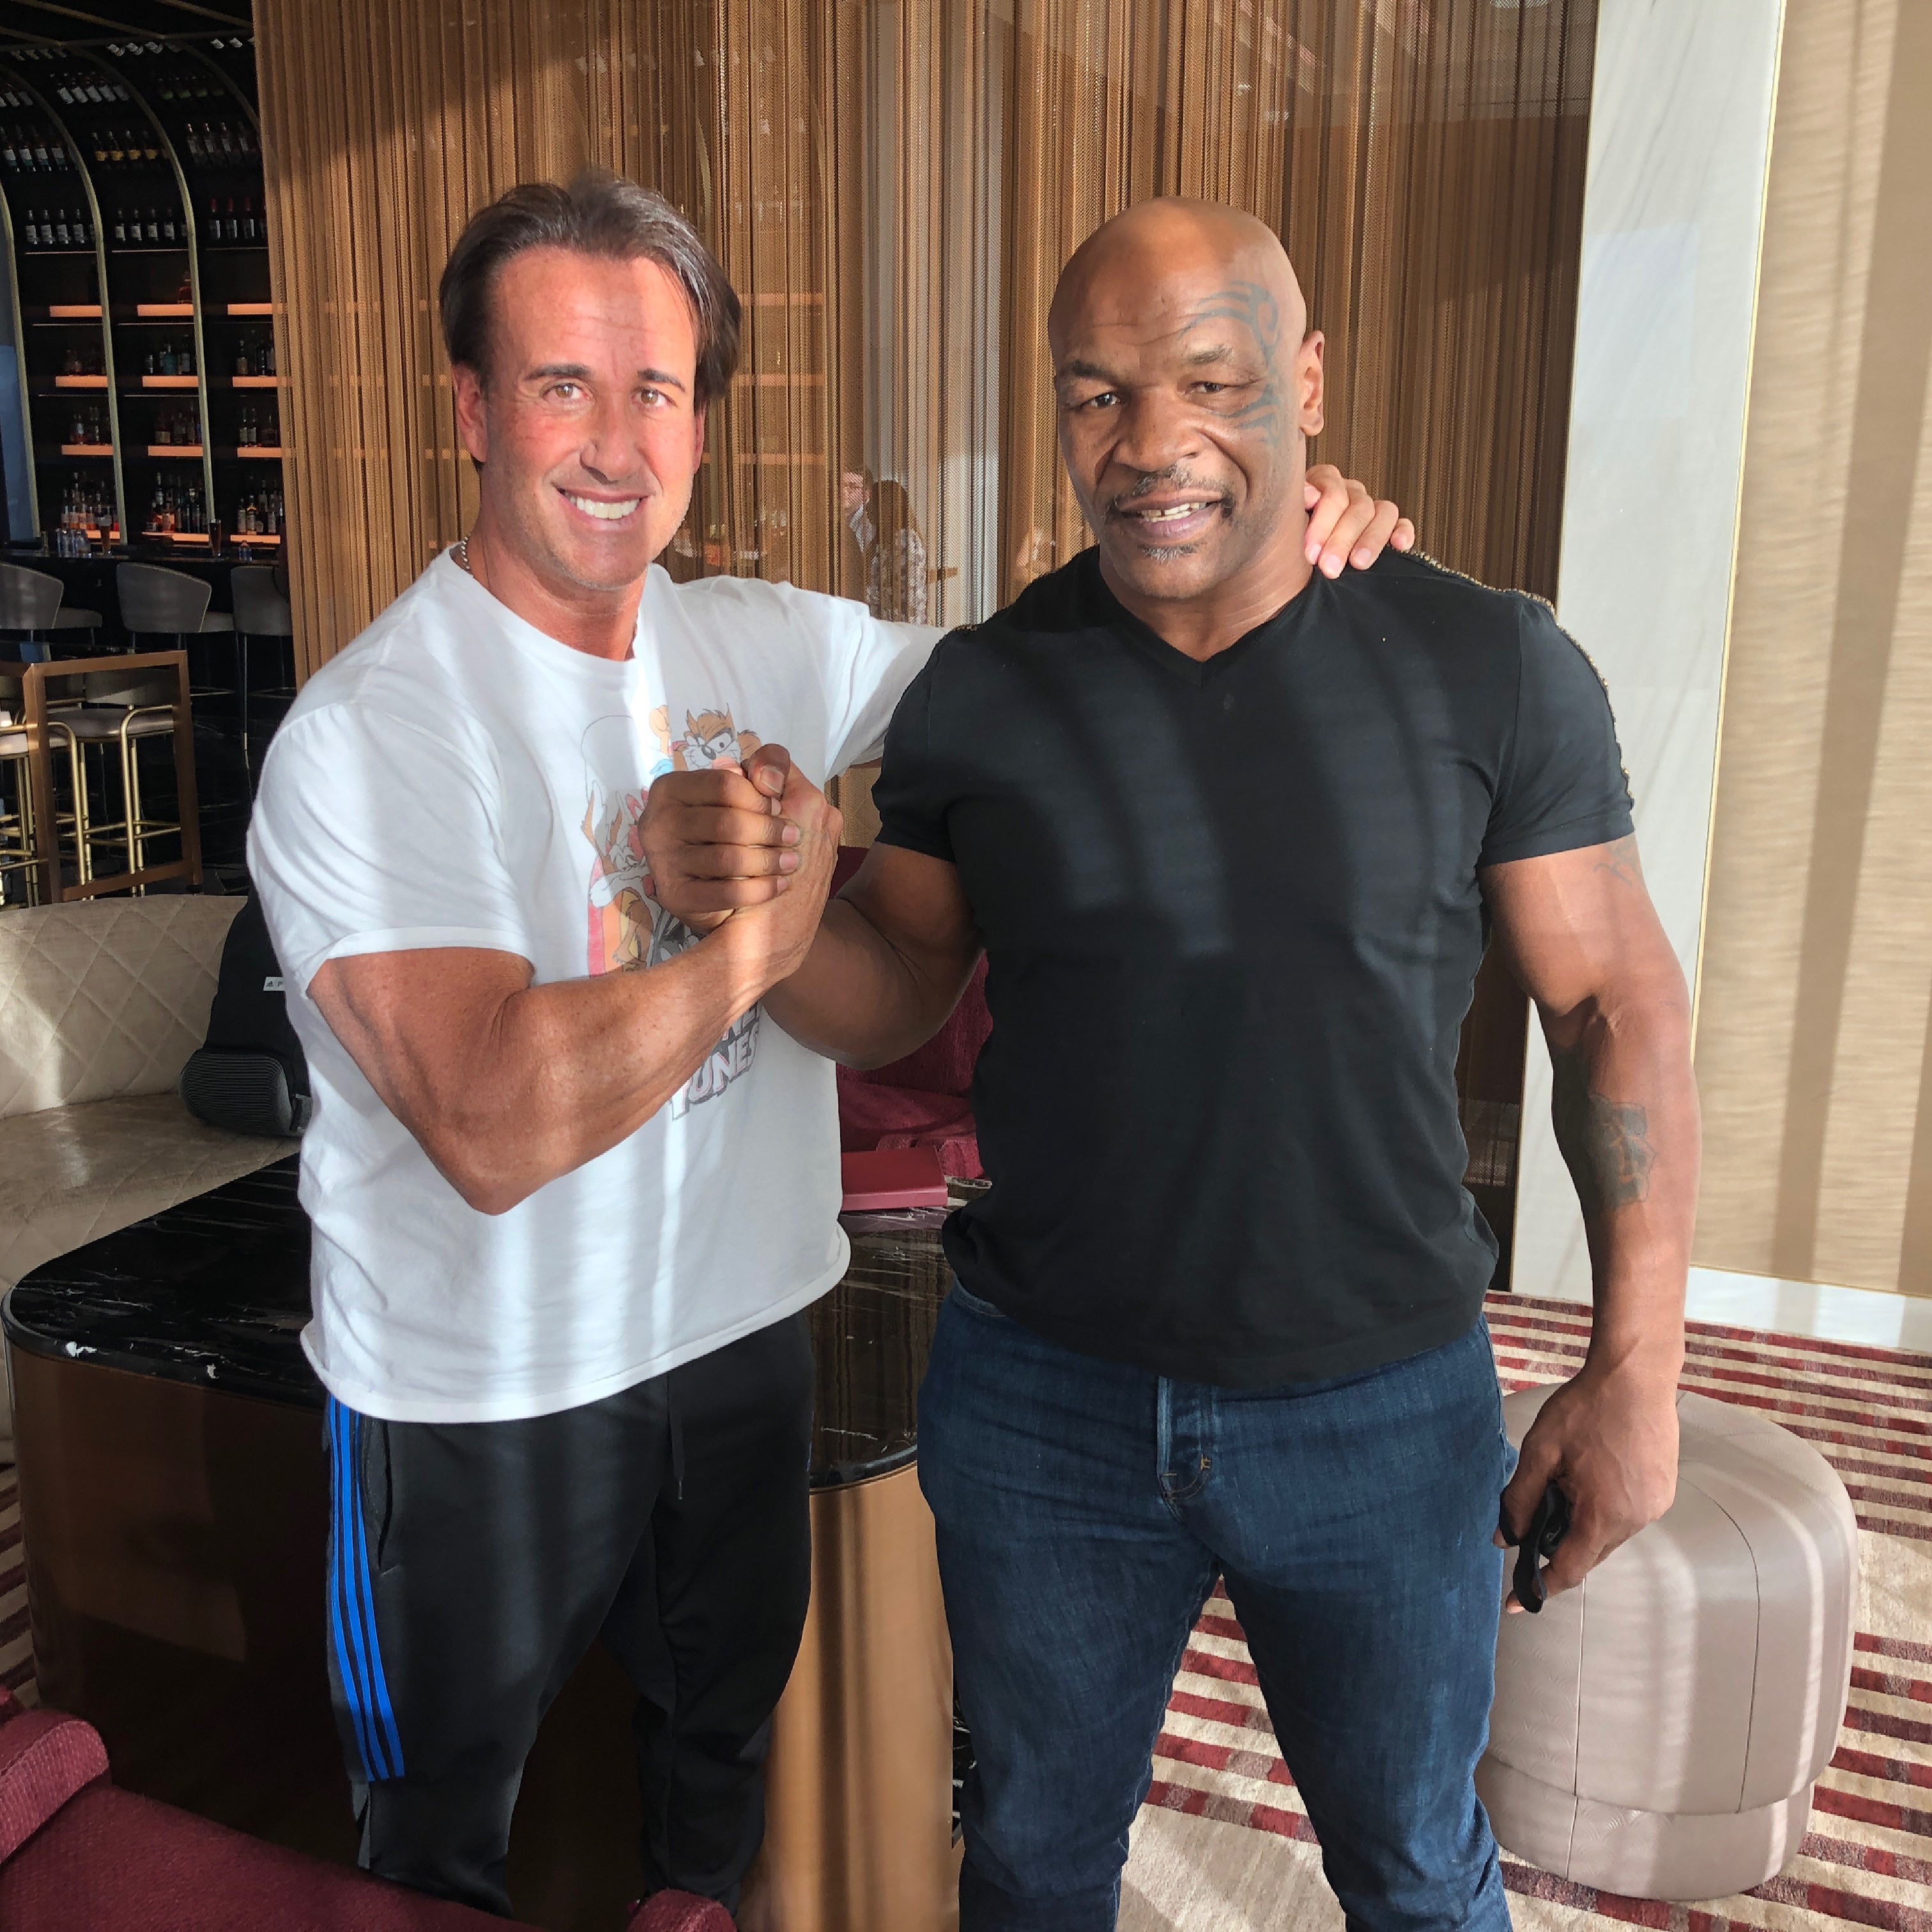 World Champion Boxer "Iron" Mike Tyson